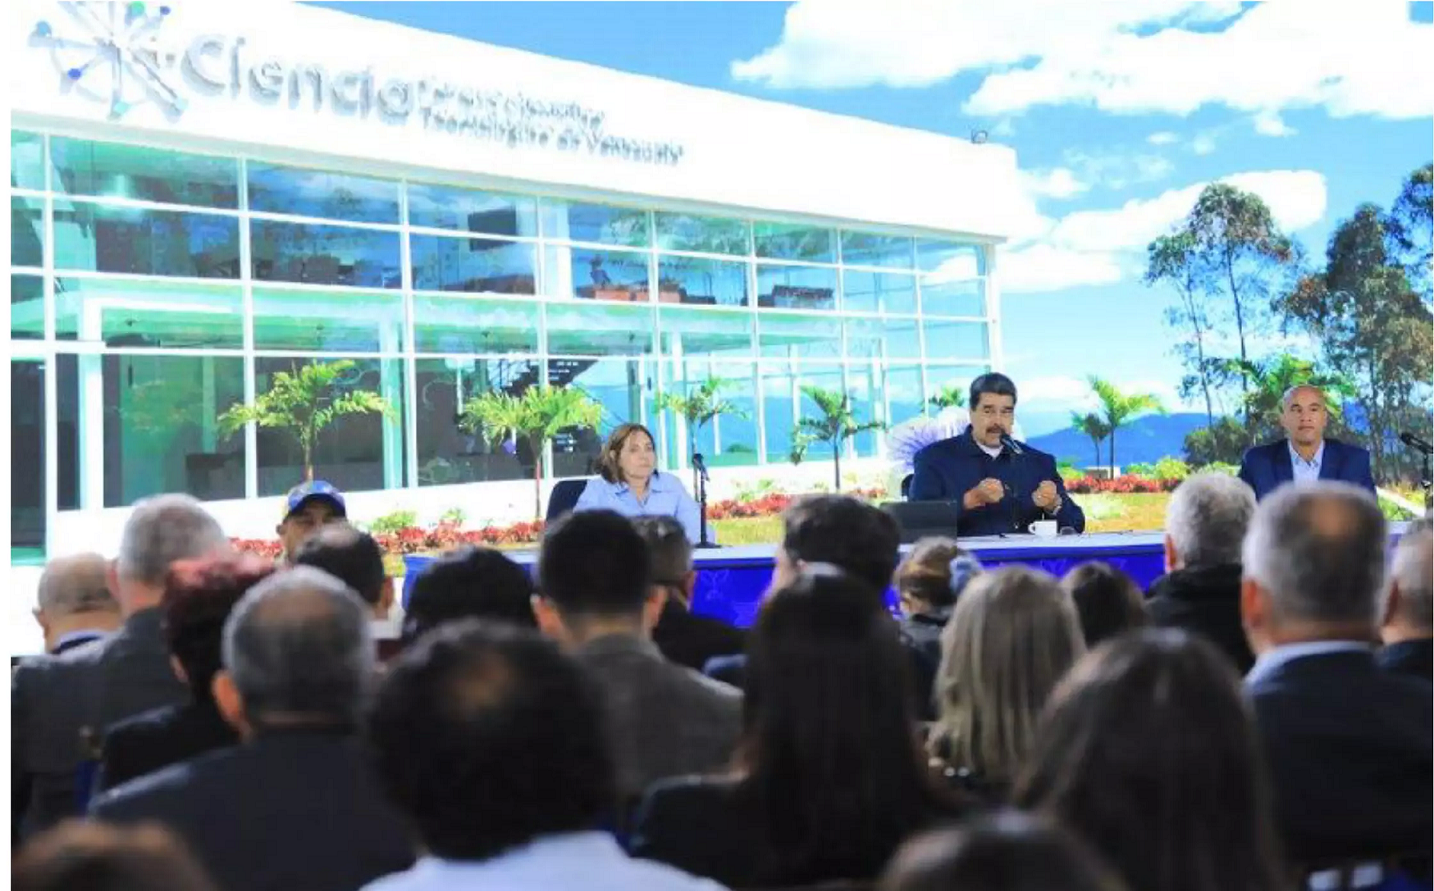 1st Technology Park in Venezuela Established Using Pardis Technology Park Experience